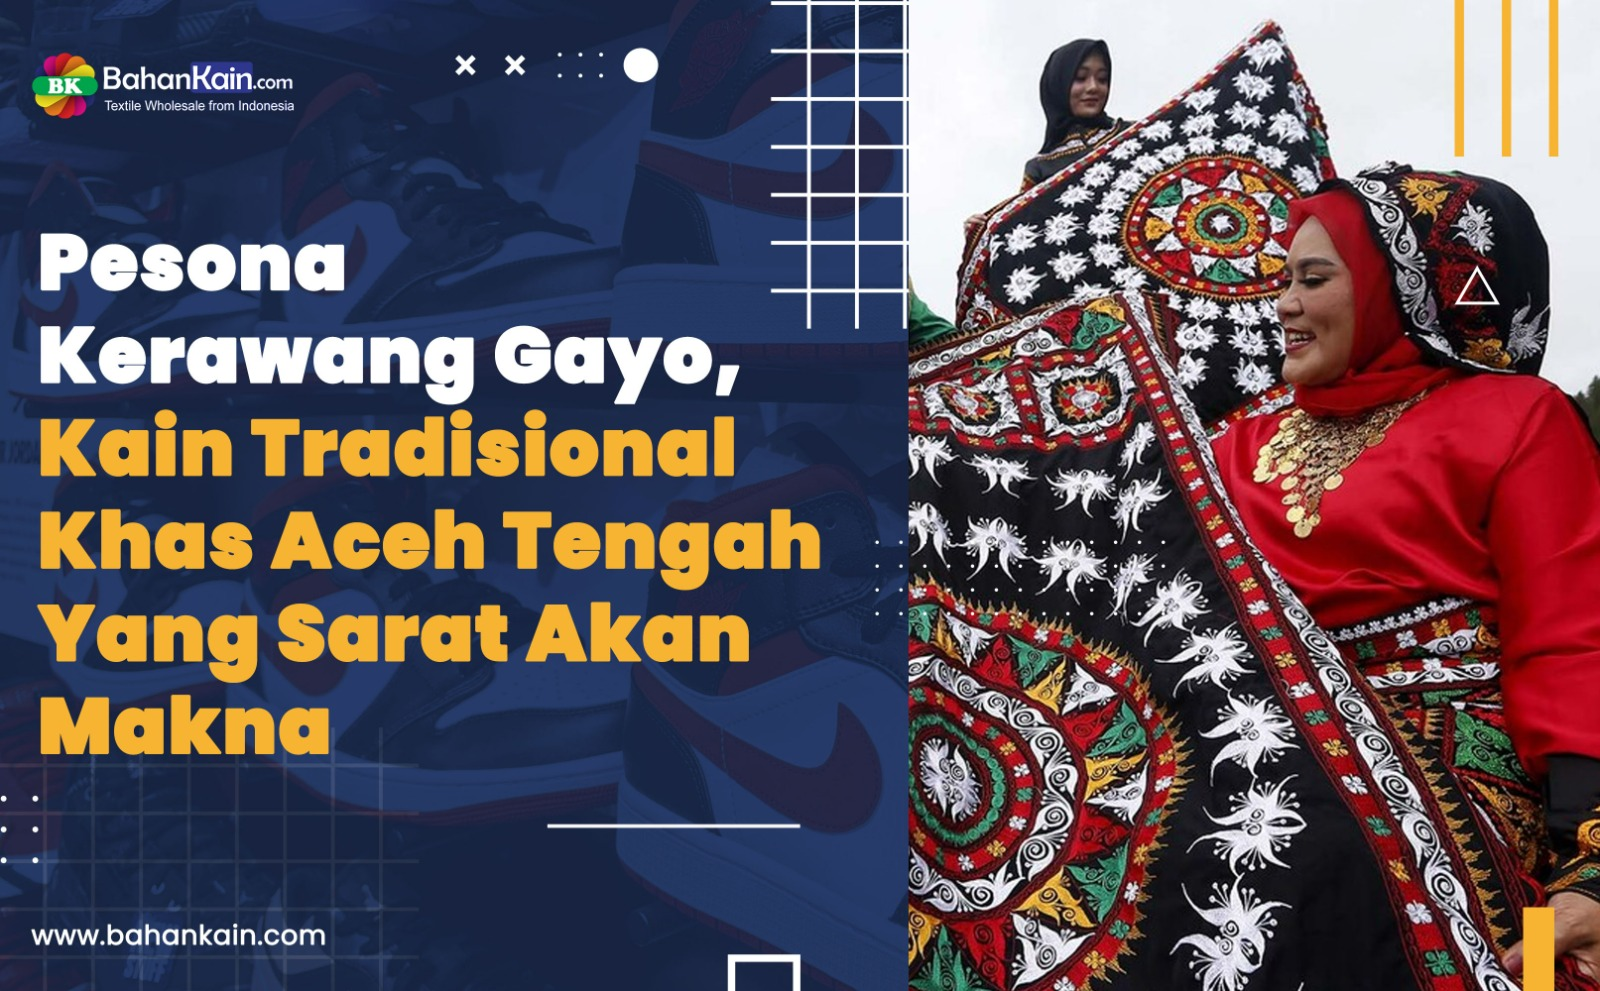 Pesona Kerawang Gayo, Kain Tradisional Khas Aceh Tengah Yang Sarat Akan Makna